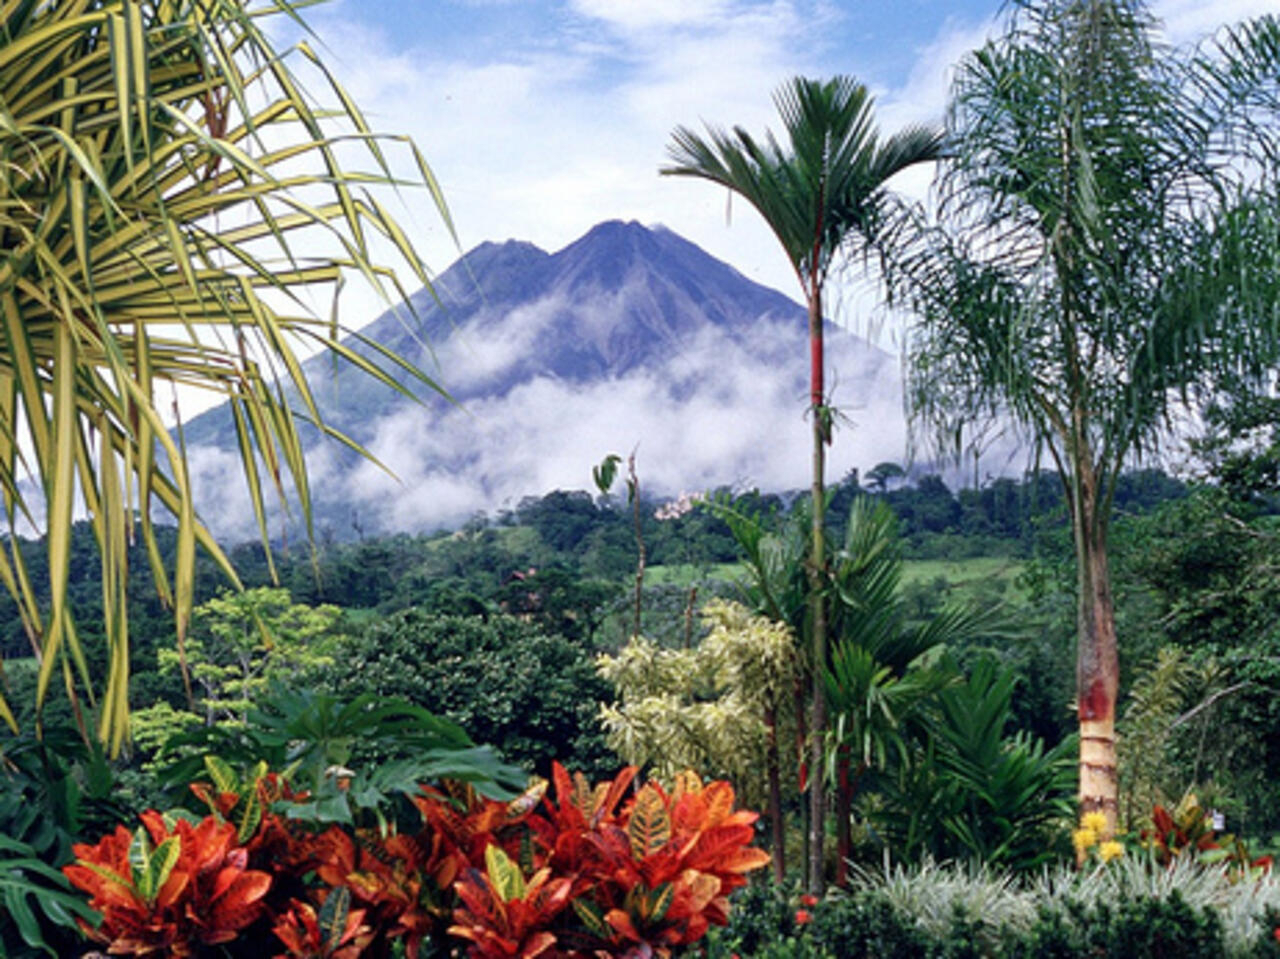 Costa Rica, kho tàng bất tận của nhân loại (Nguồn: Internet)